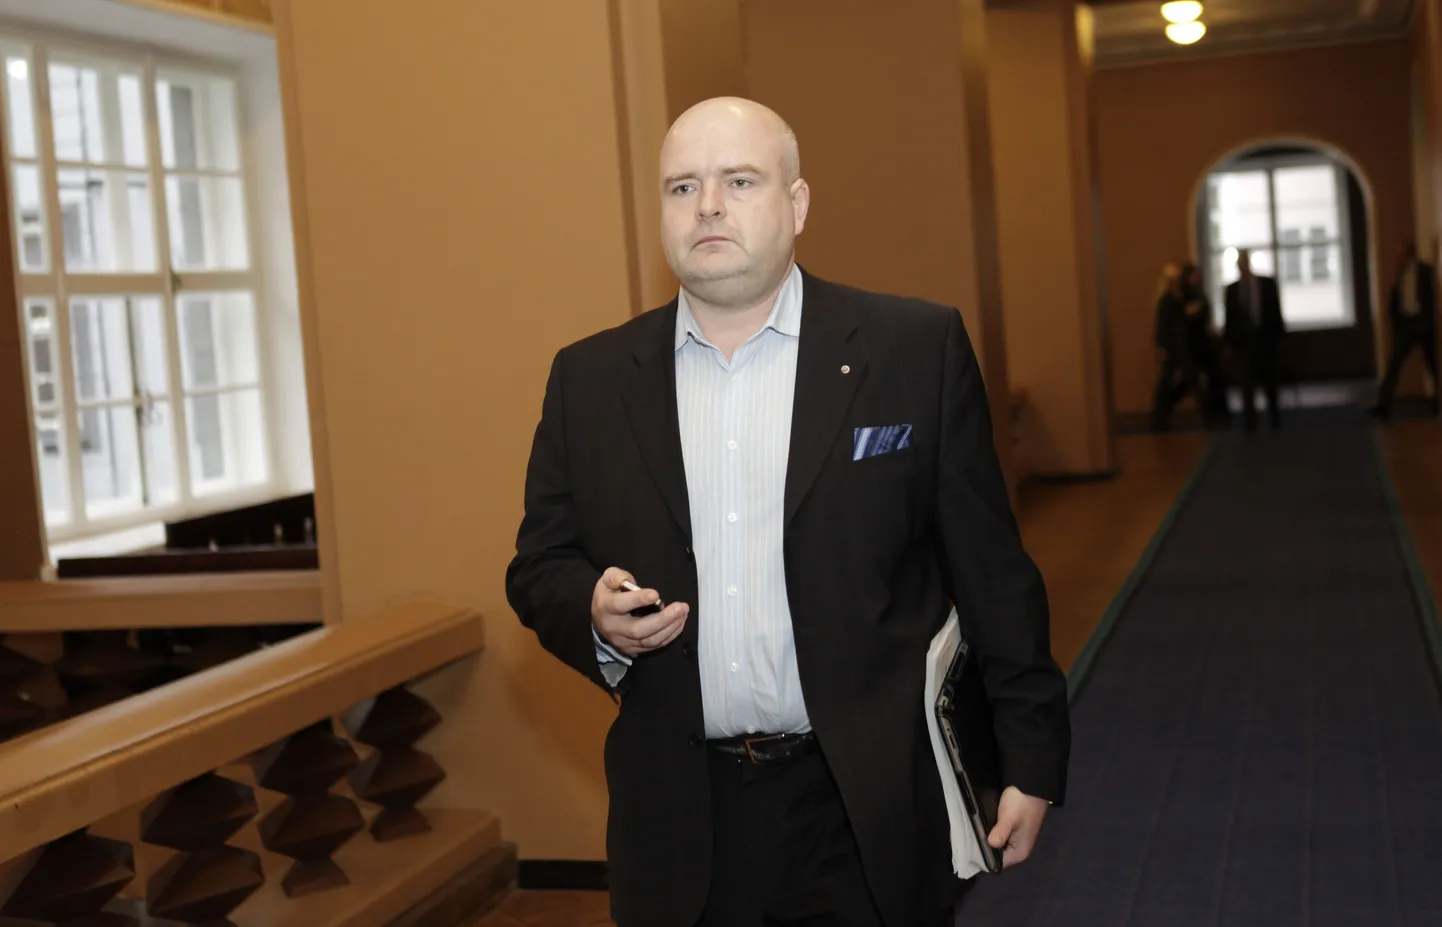 Sotsiaaldemokraatliku Erakonna Tallinna linnapeakandidaat Andres Anvelt